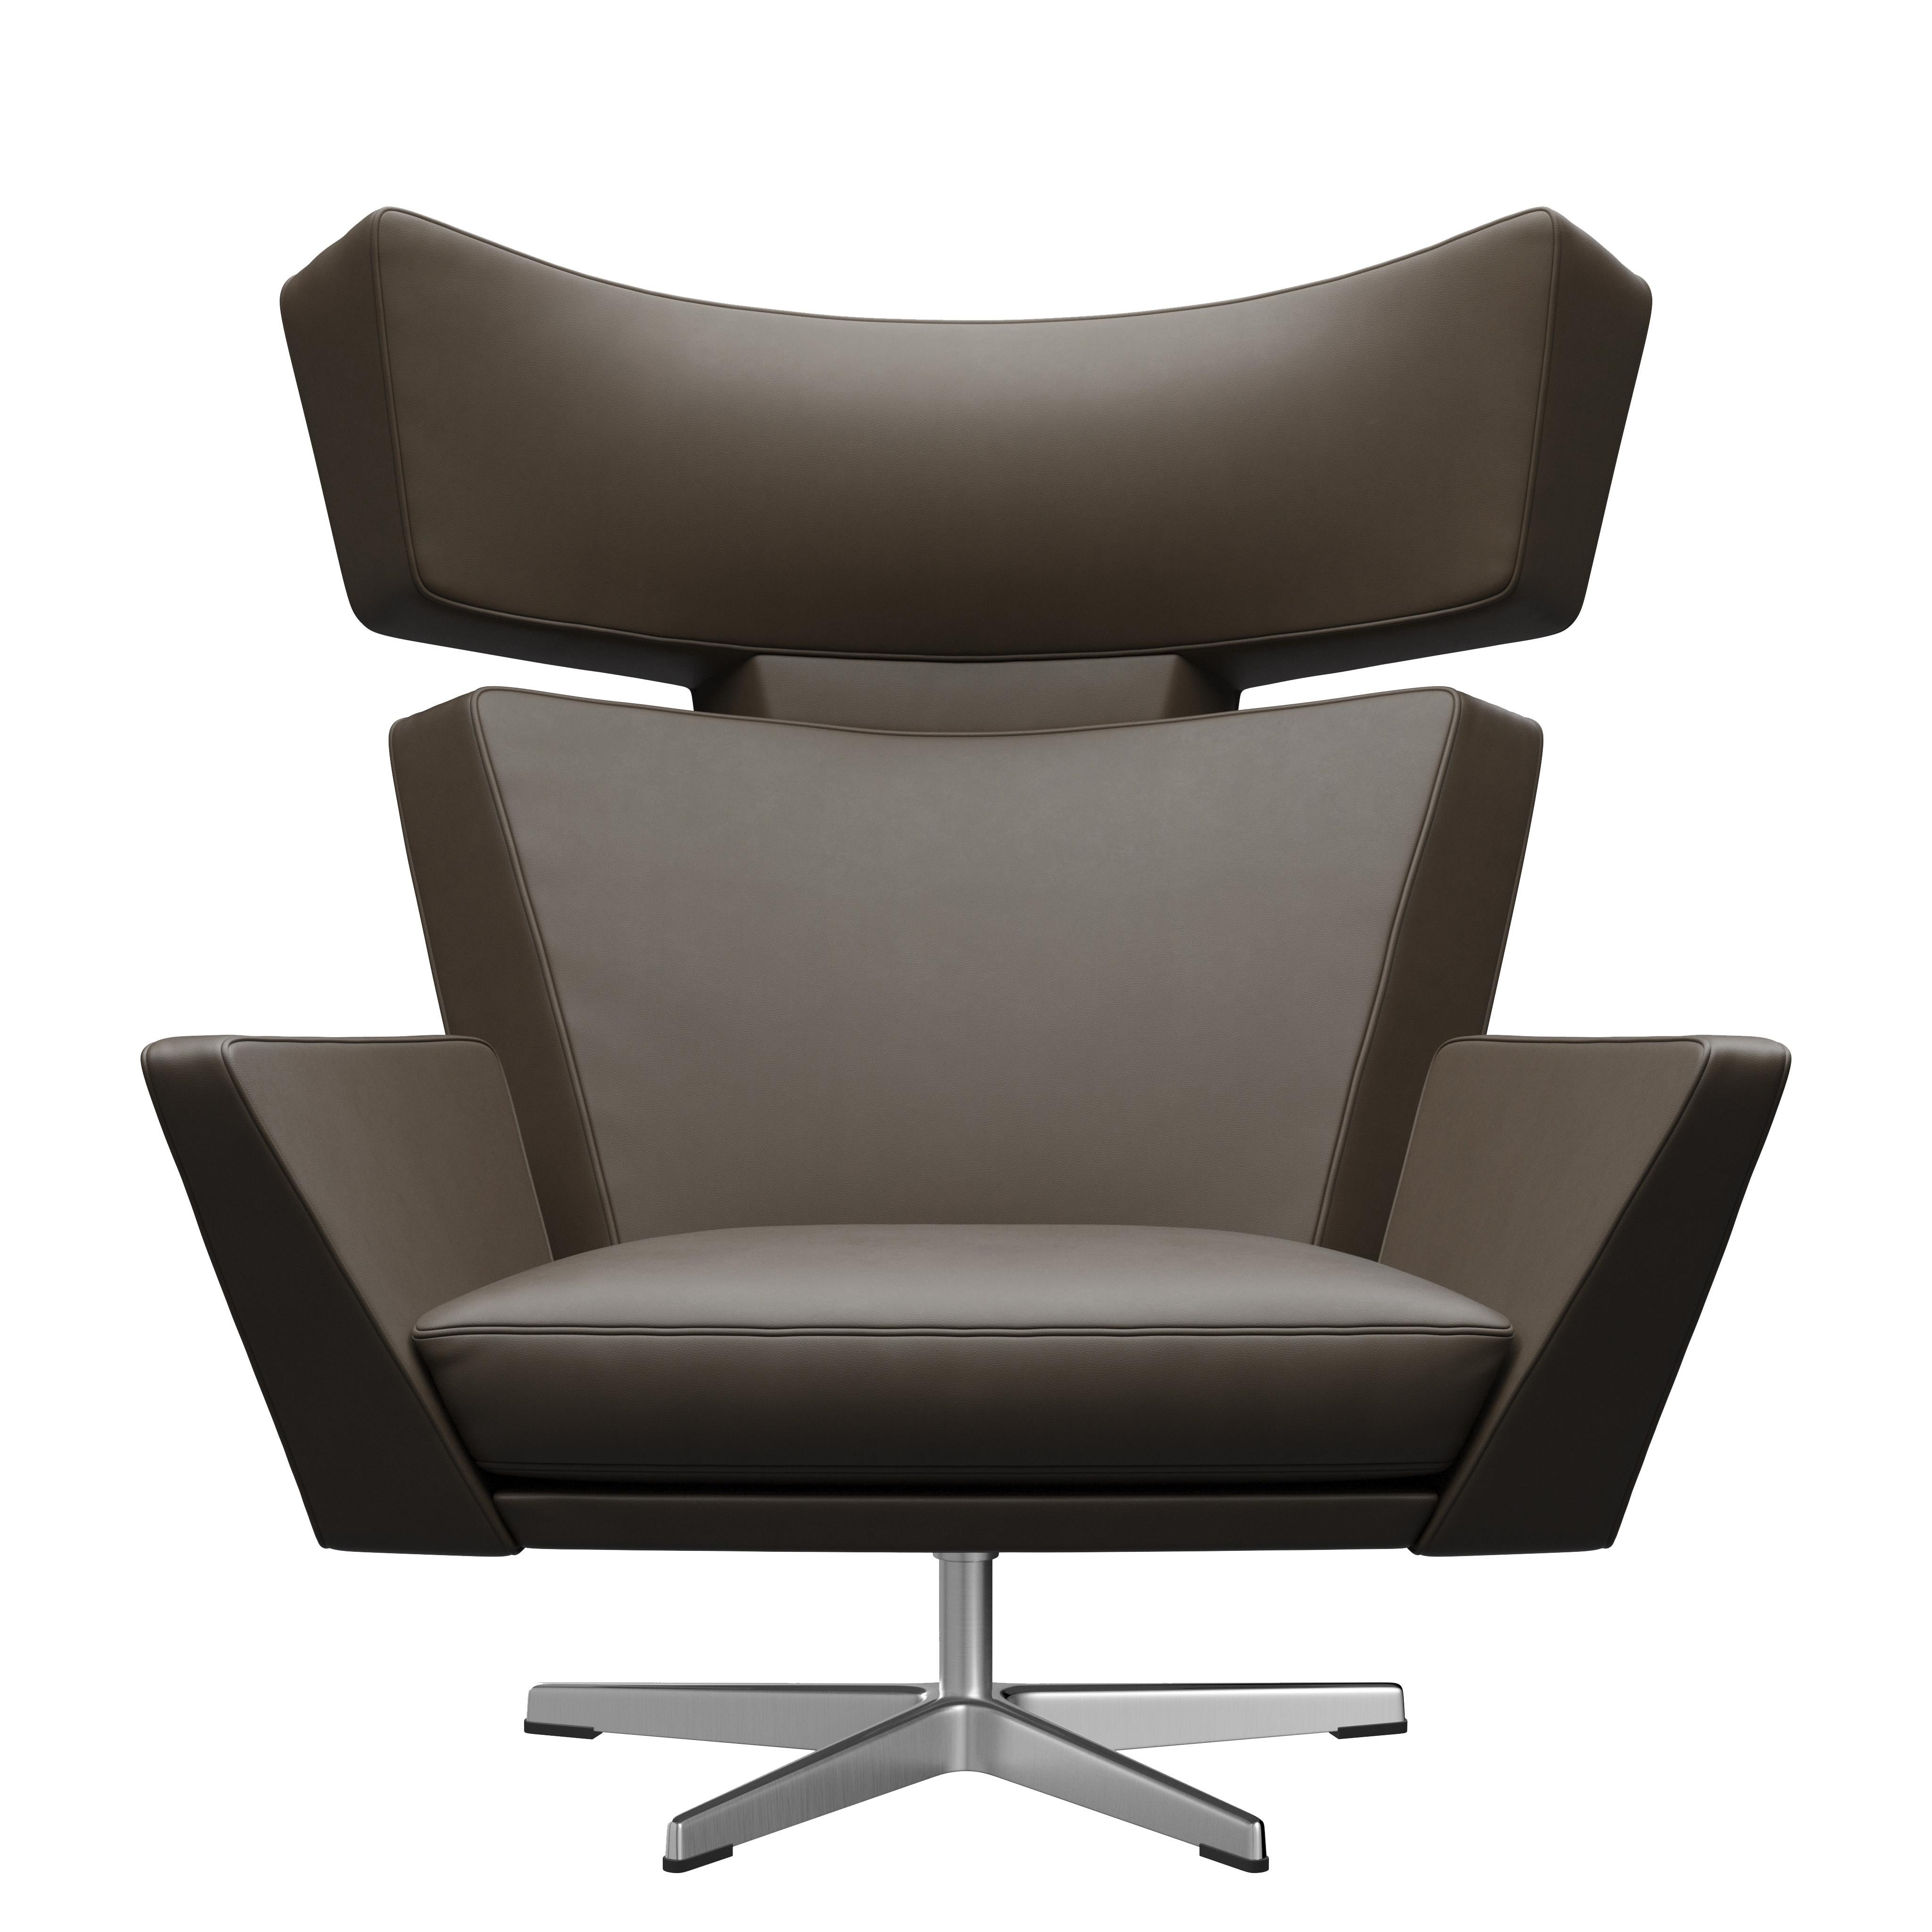 Arne Jacobsen 'Oksen' Chair for Fritz Hansen in Essential Leather Upholstery For Sale 8